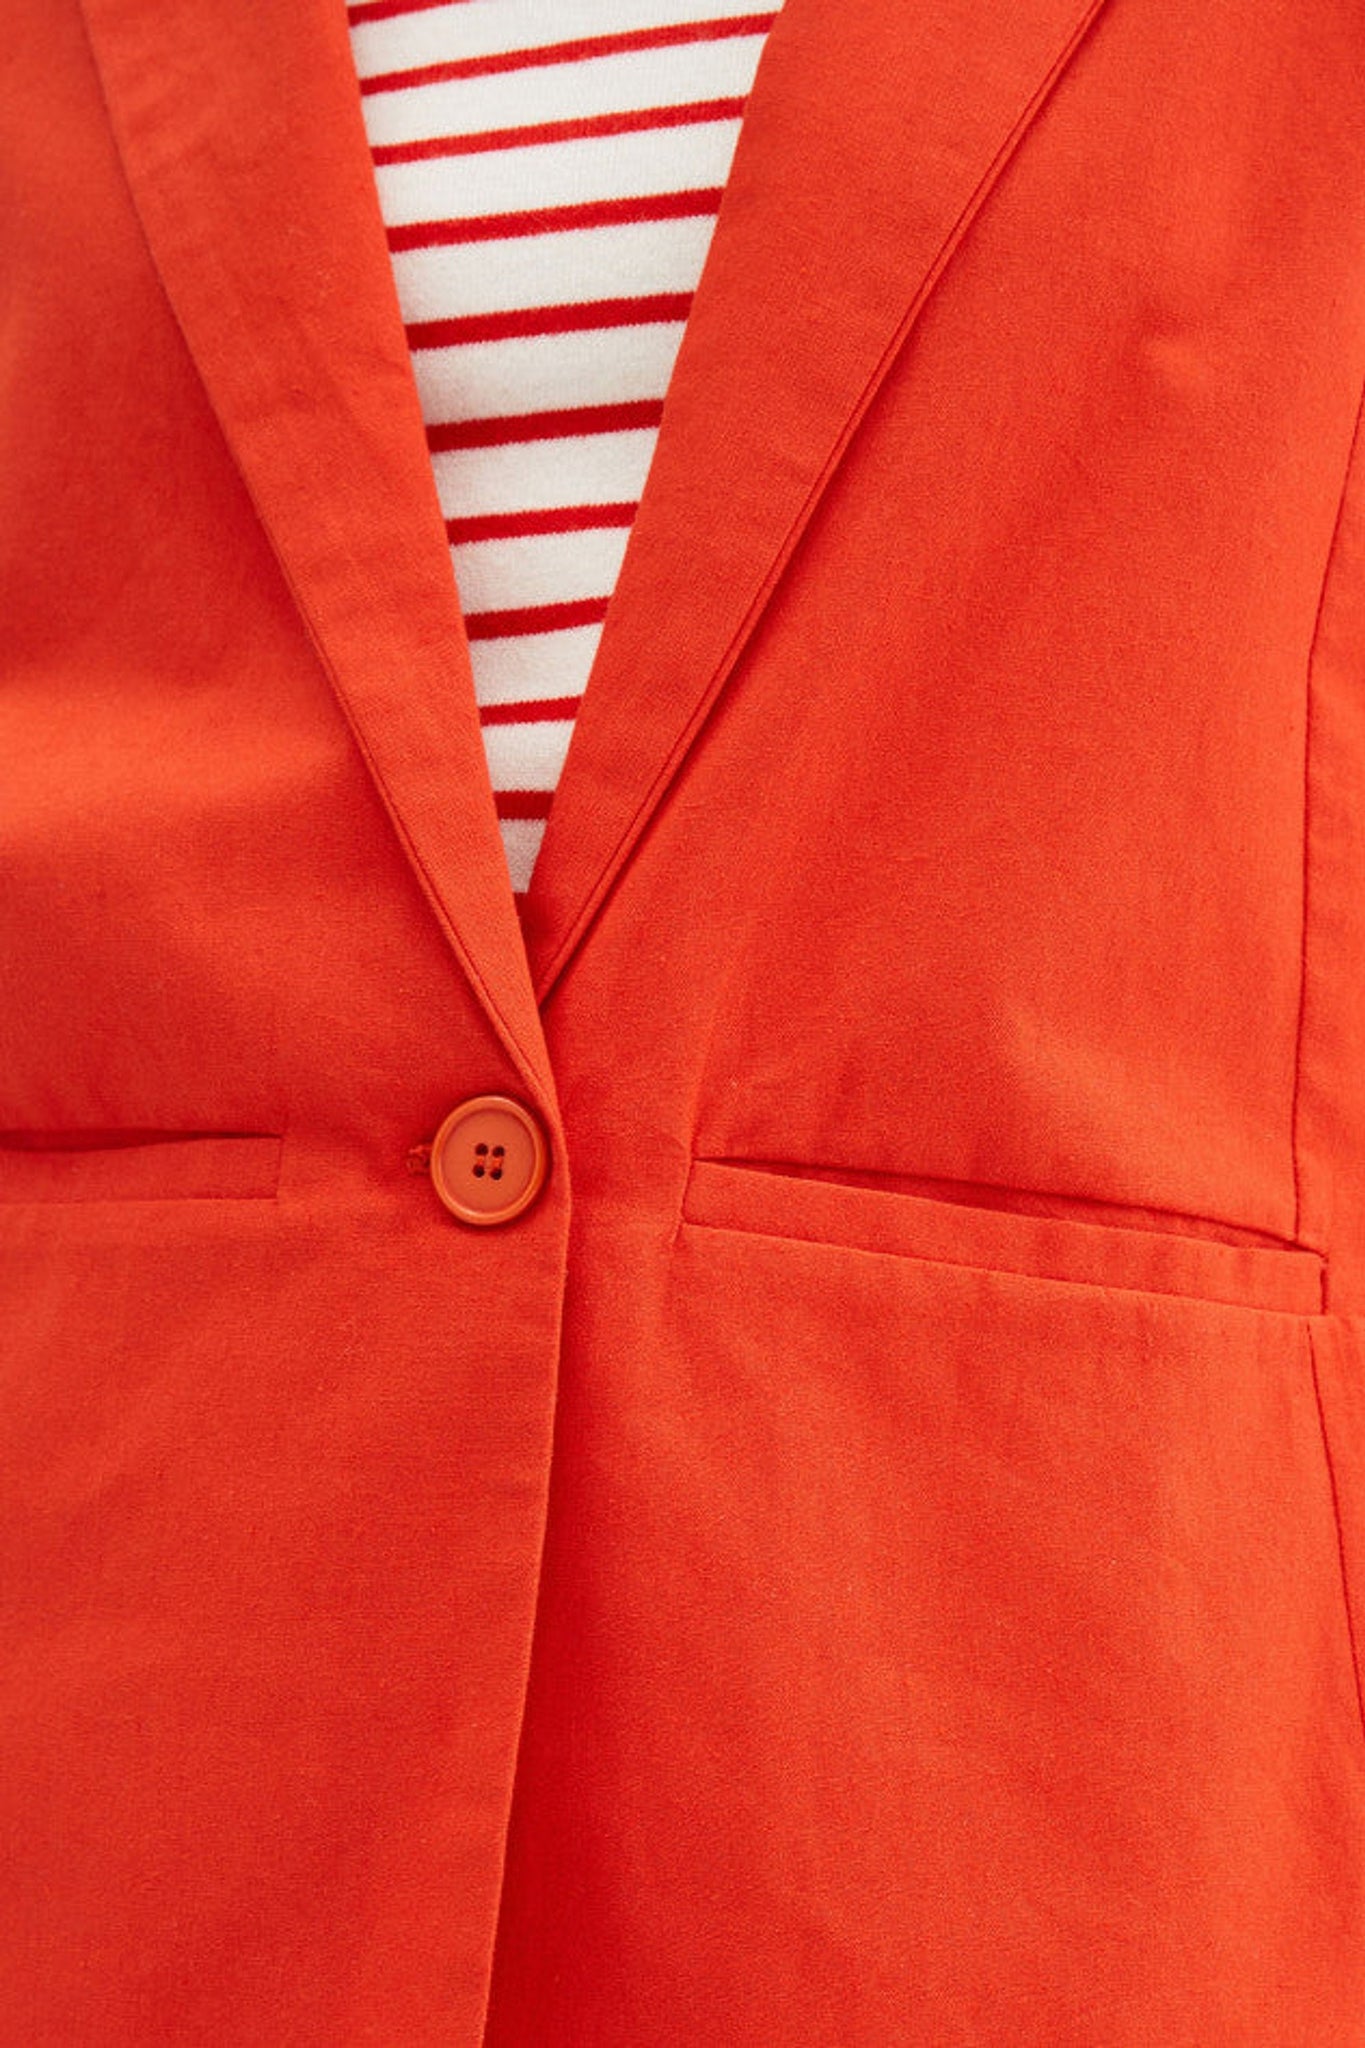 Compania Fantastica Red cotton blazer with lapel collar - clever alice